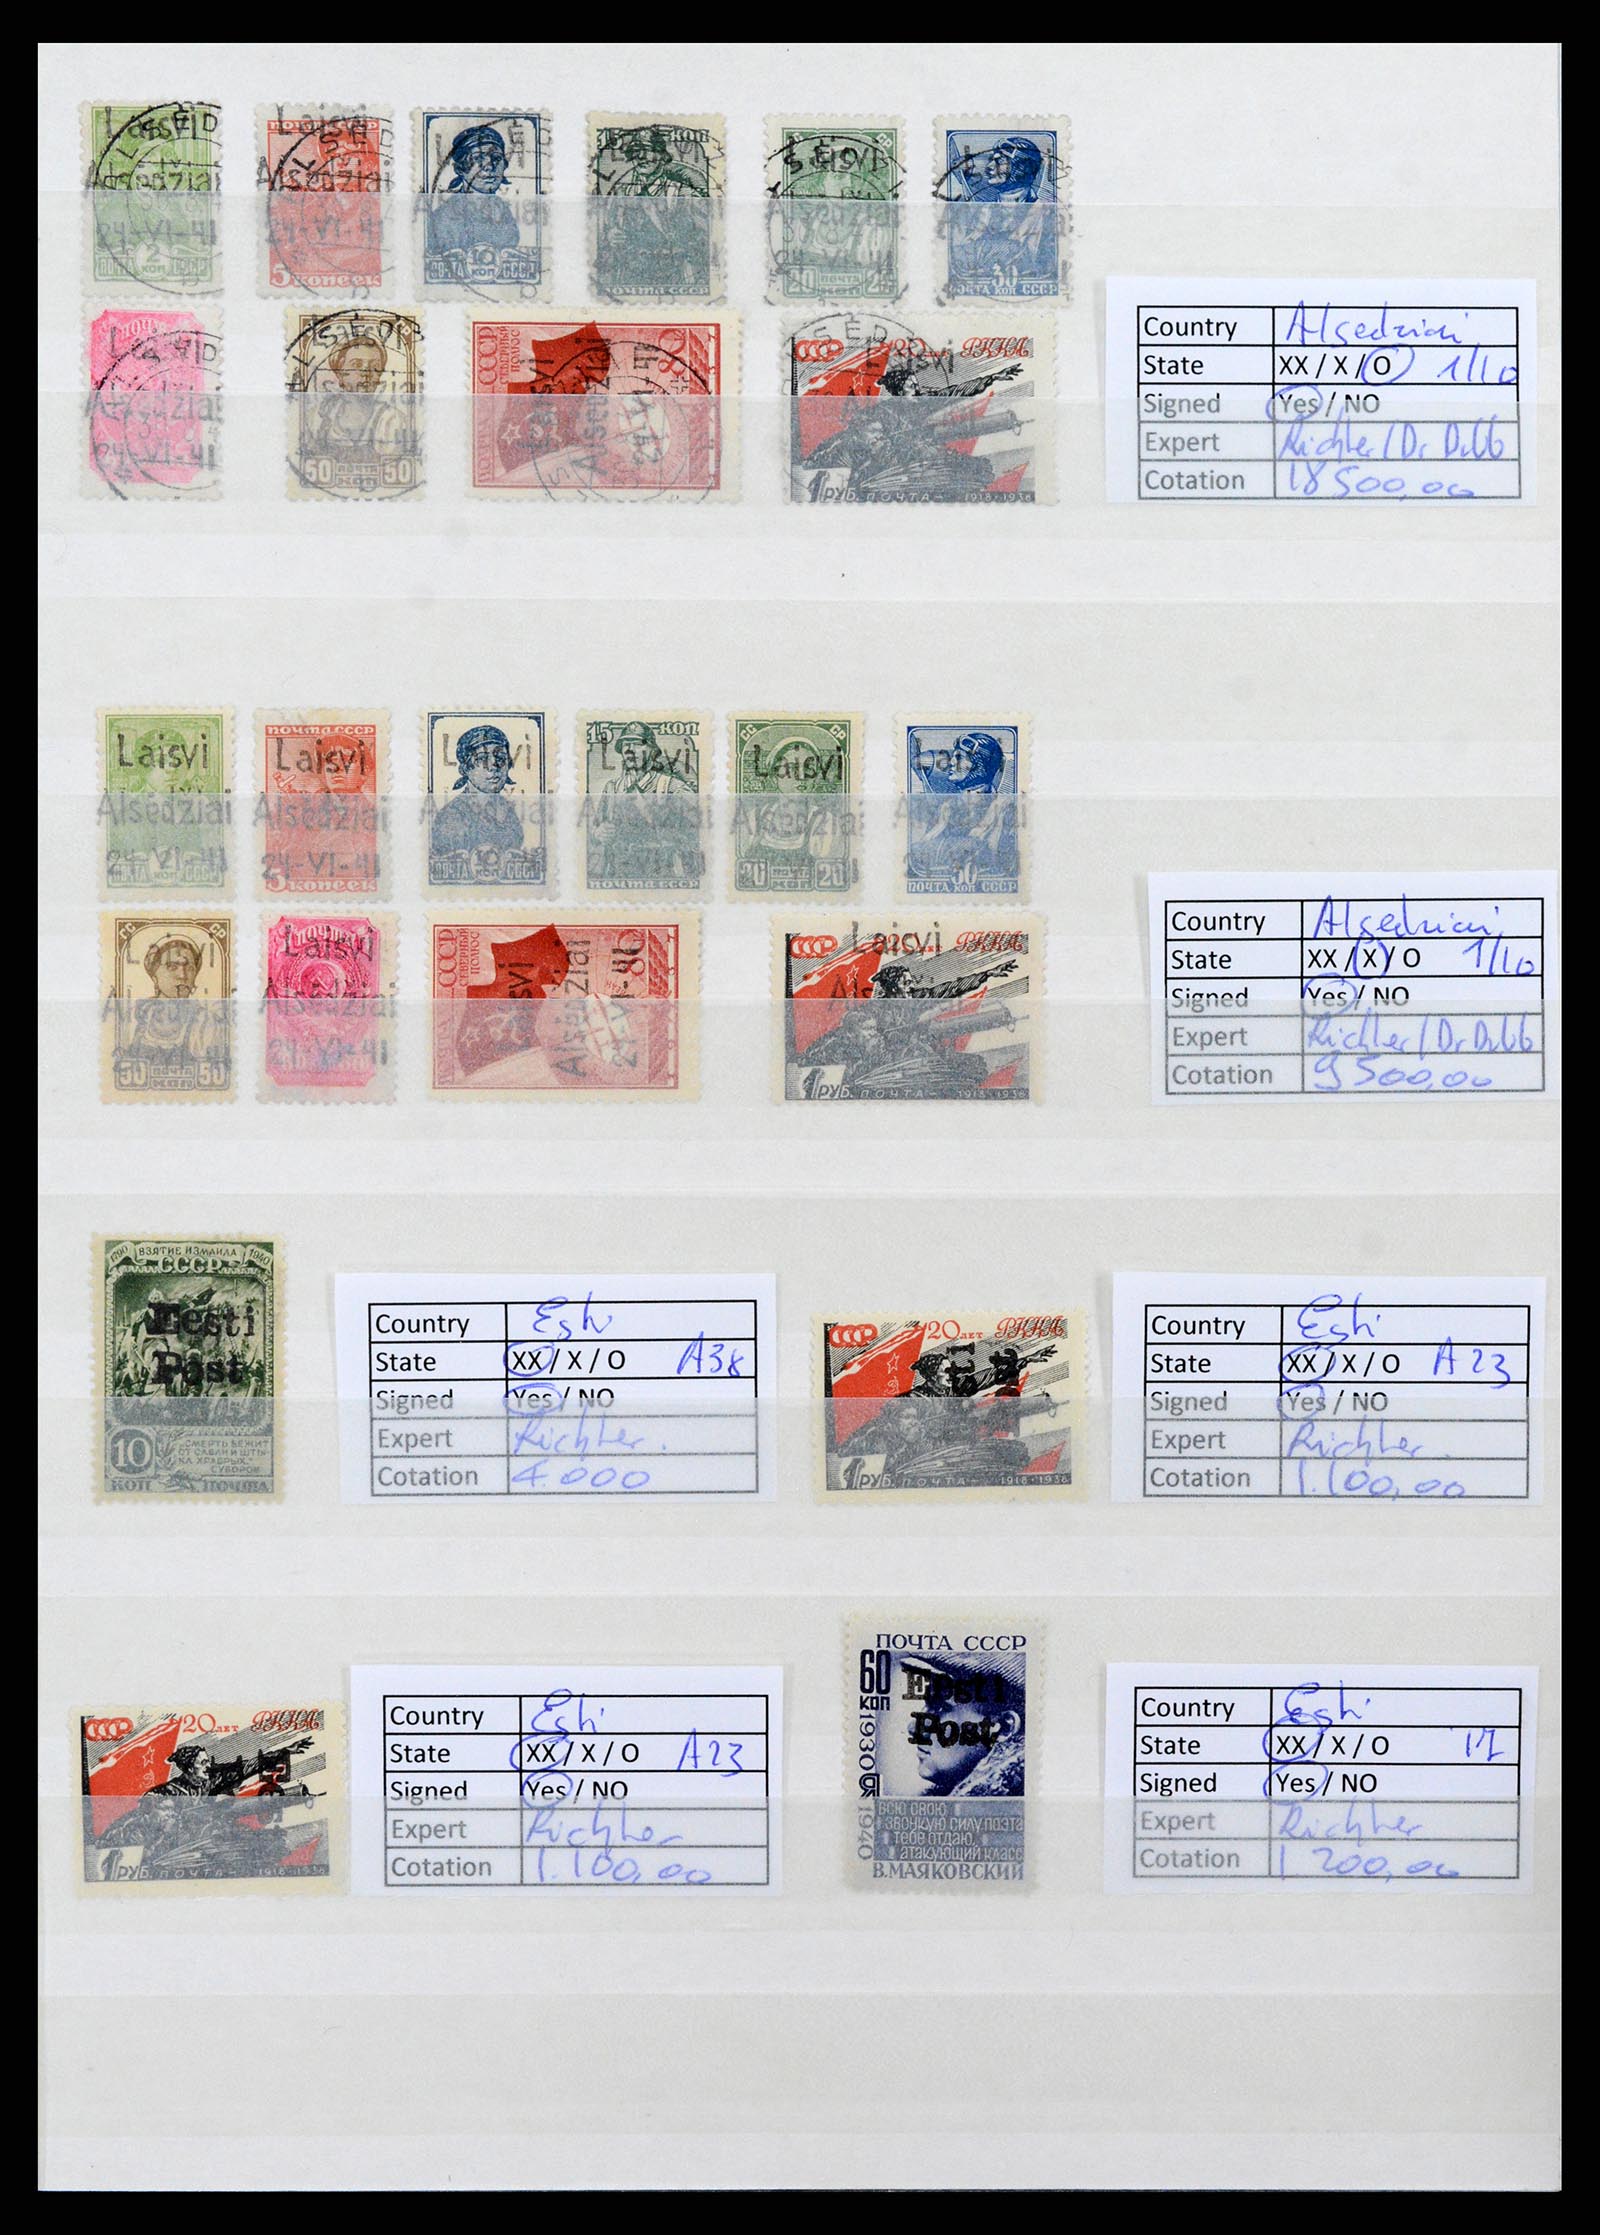 37690 007 - Stamp collection 37690 German occupation 2nd worldwar 1939-1945.